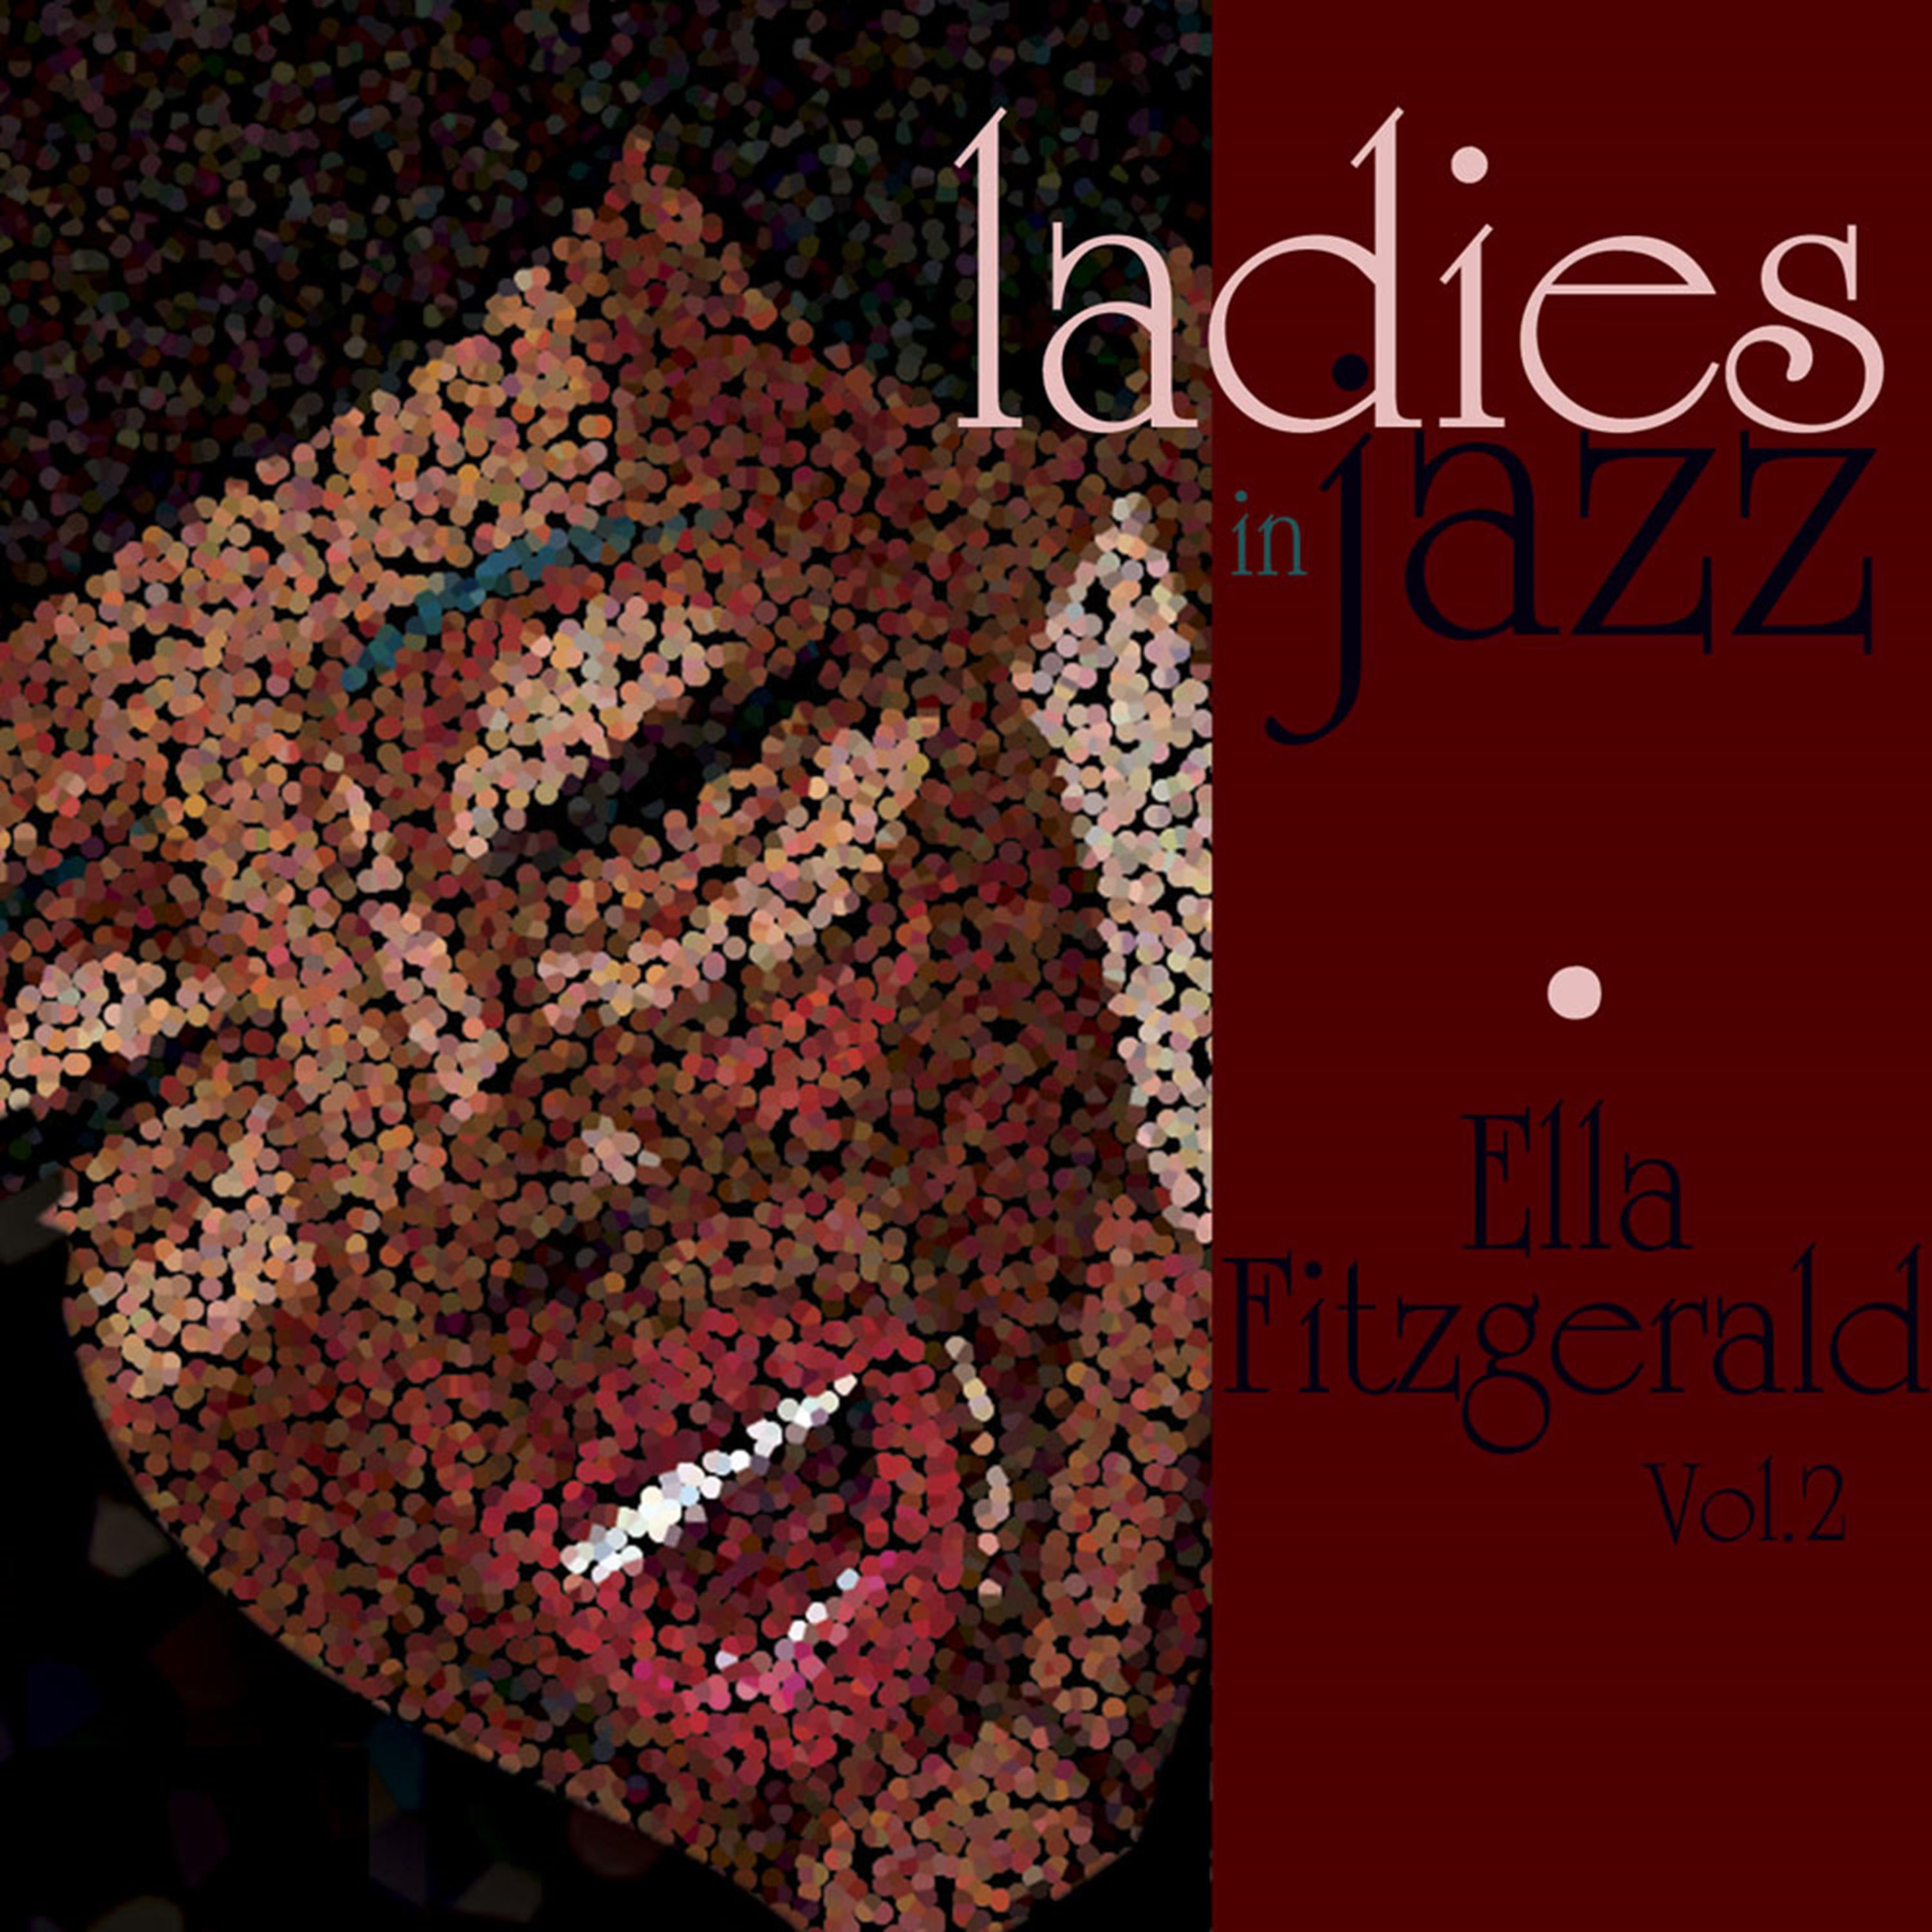 Ladies in Jazz - Ella Fitzgerald, Vol. 2